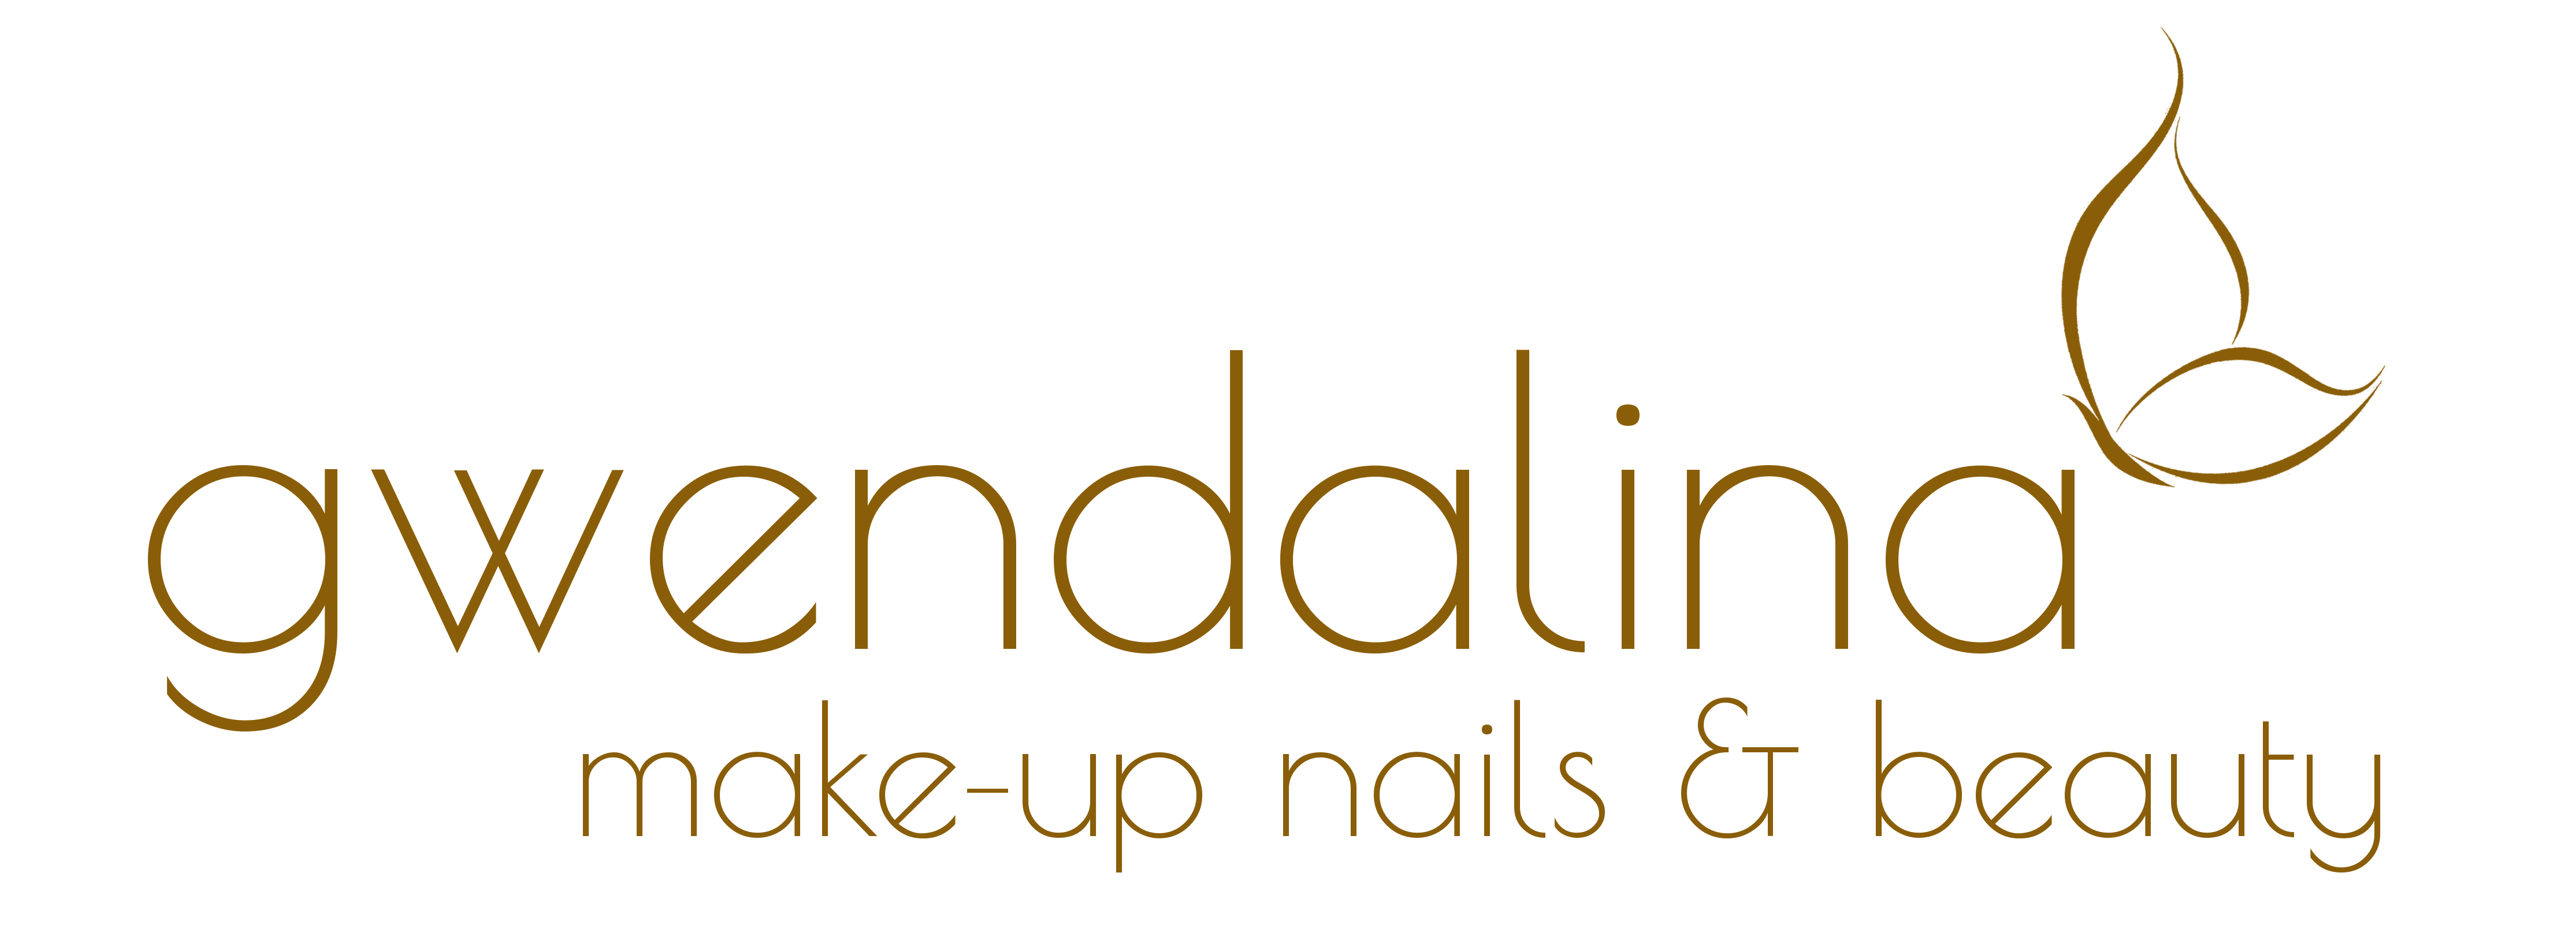 gwendalina | make-up nails beauty